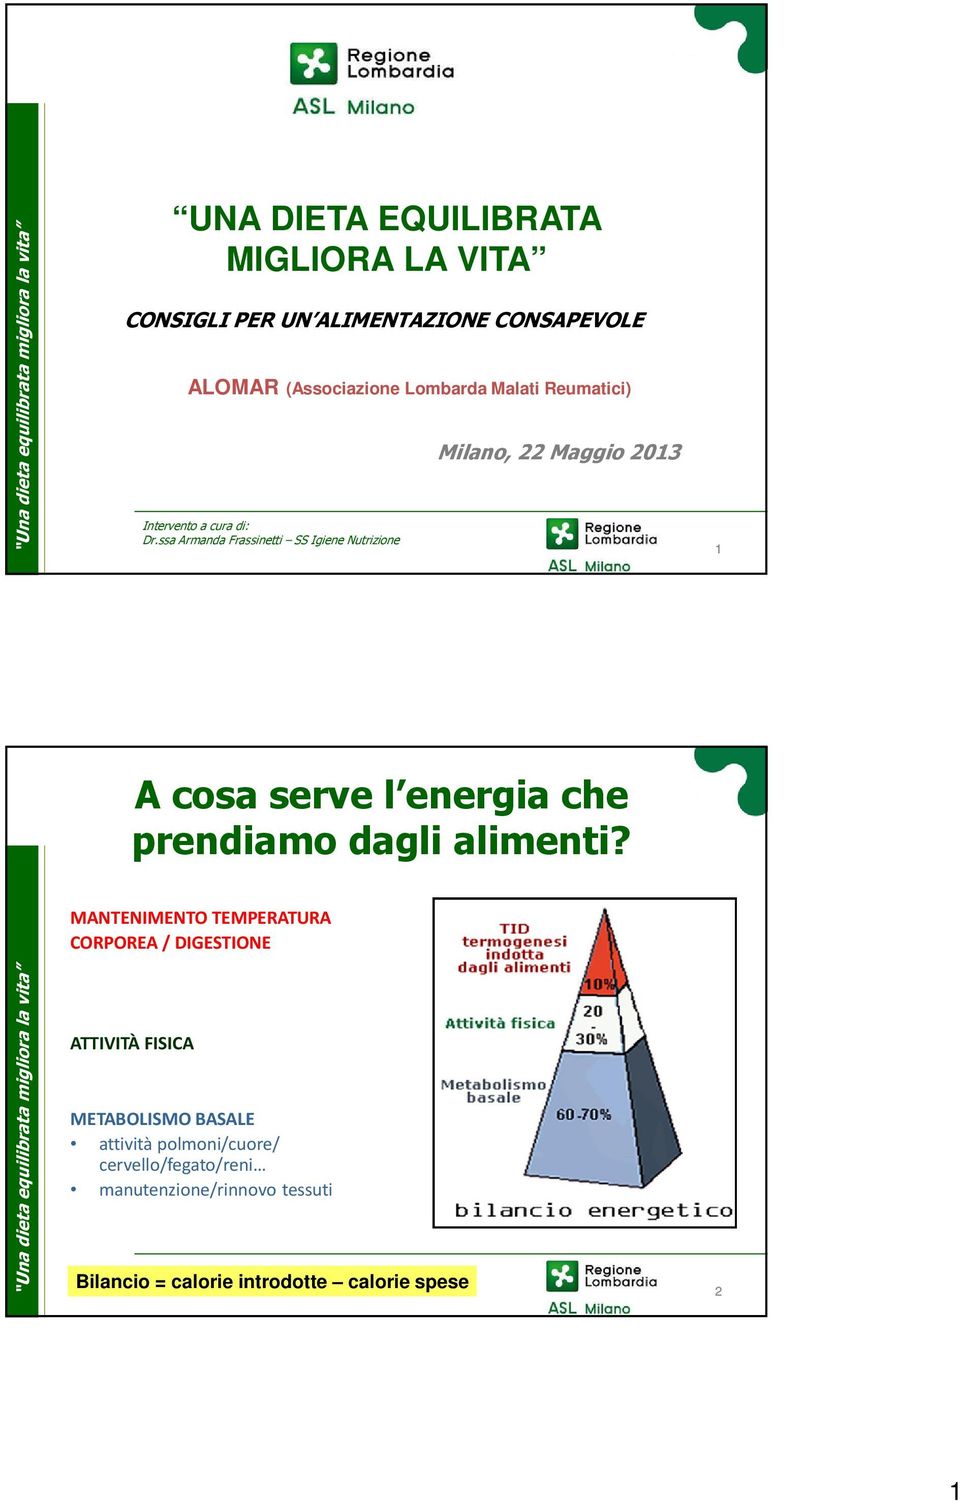 ssa Armanda Frassinetti SS Igiene Nutrizione Milano, 22 Maggio 2013 1 A cosa serve l energia che prendiamo dagli